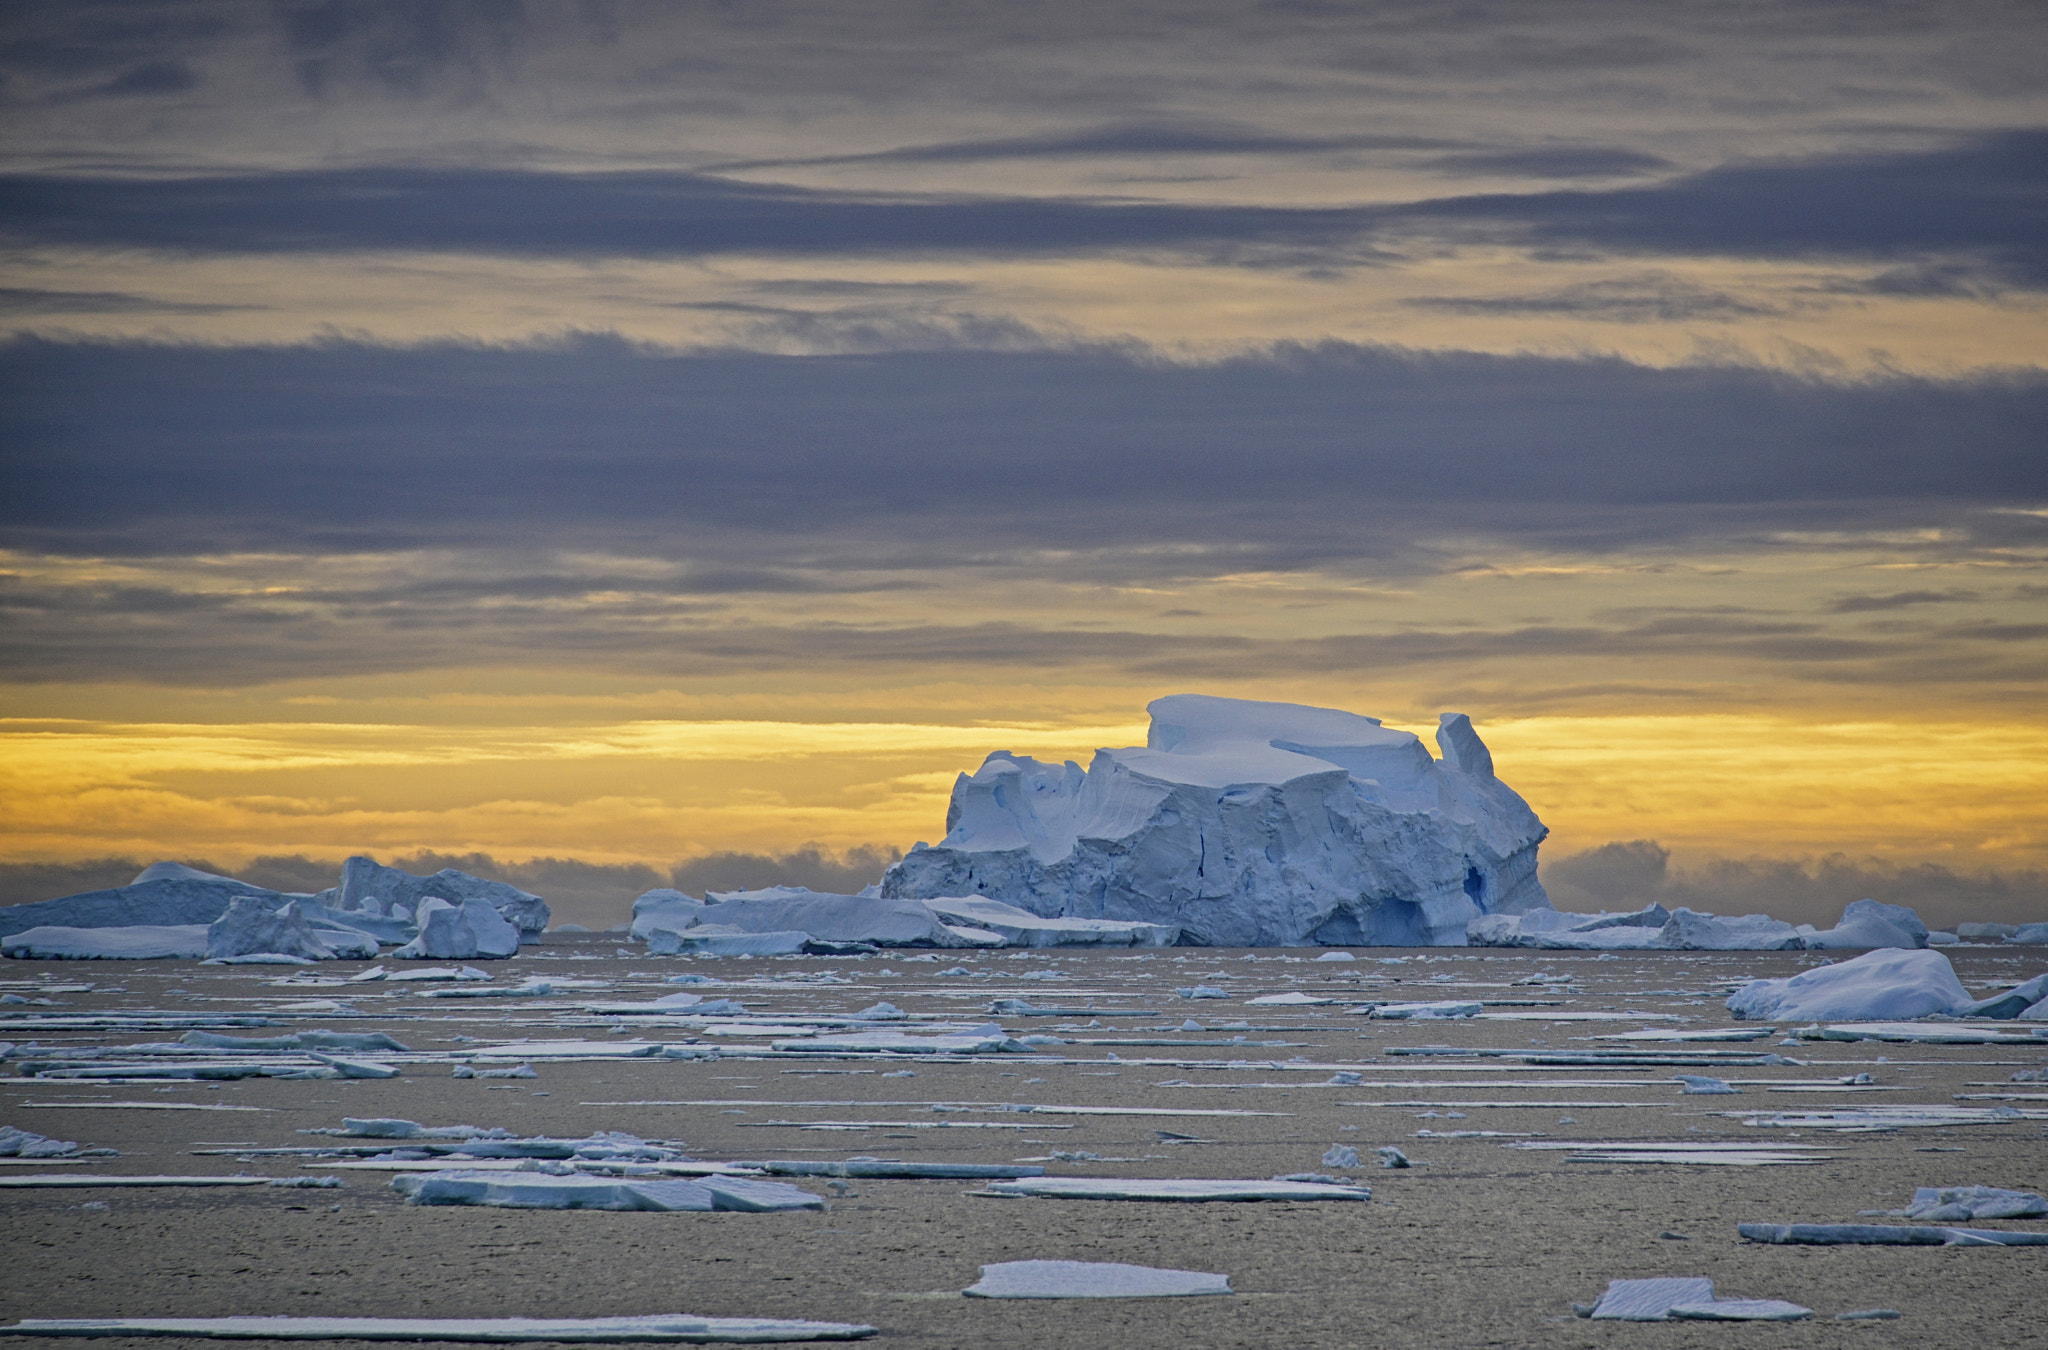 Nikon D800E + Nikon AF-S Nikkor 28-300mm F3.5-5.6G ED VR sample photo. Iceberg at dusk, antarctica photography